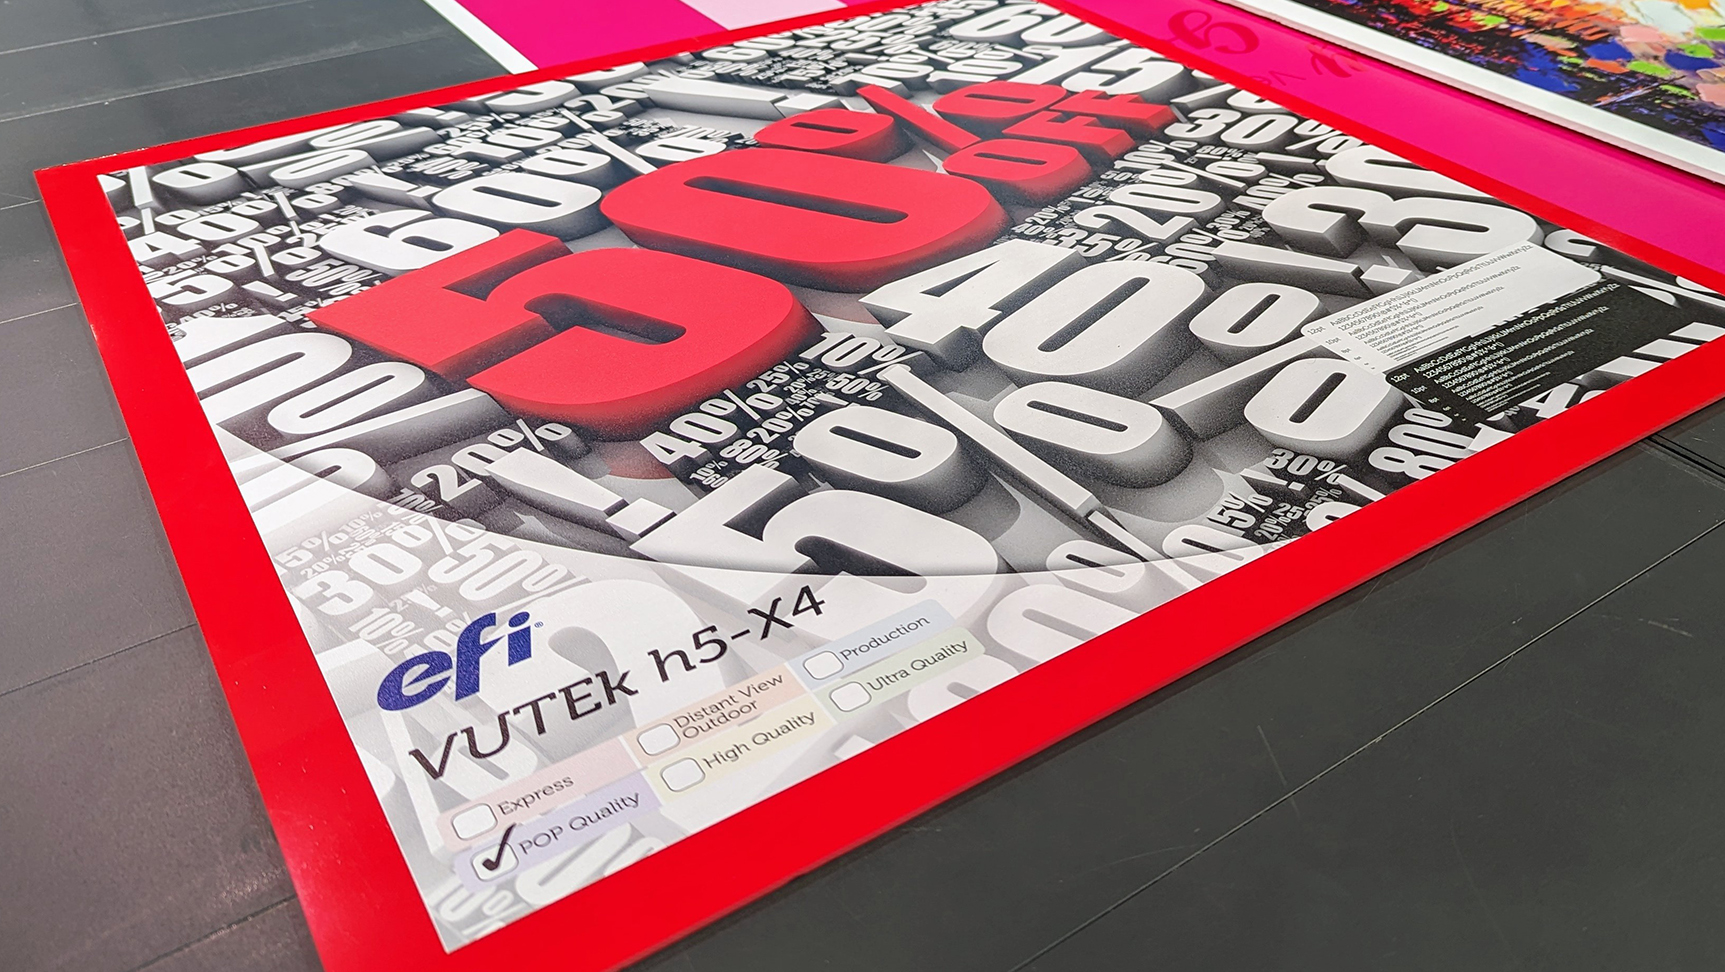 Foamalux Ultra printed by EFI on the VUTEk 32h